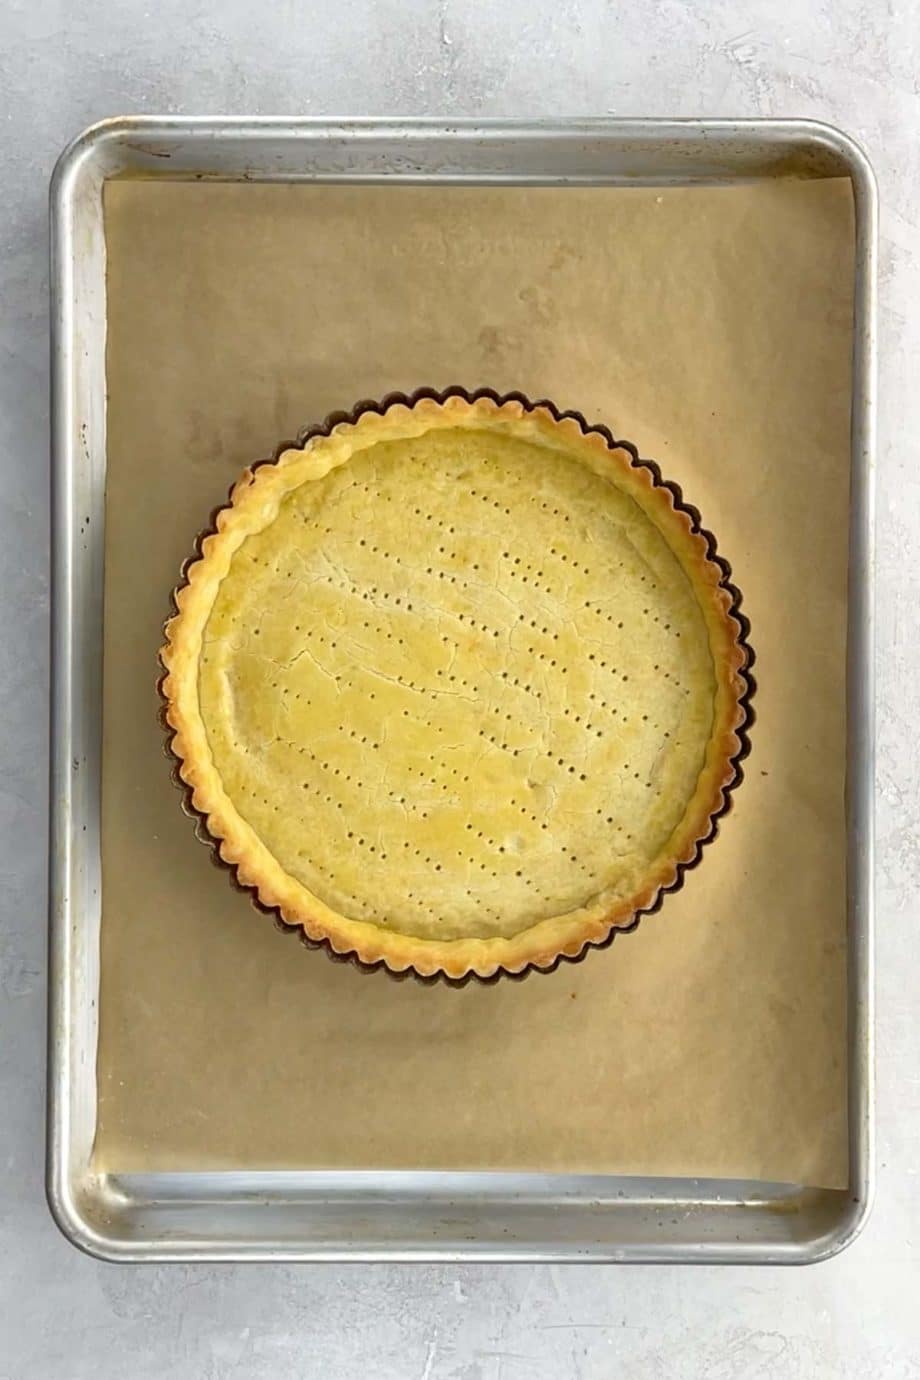 a blind baked shortbread tart crust on a baking sheet